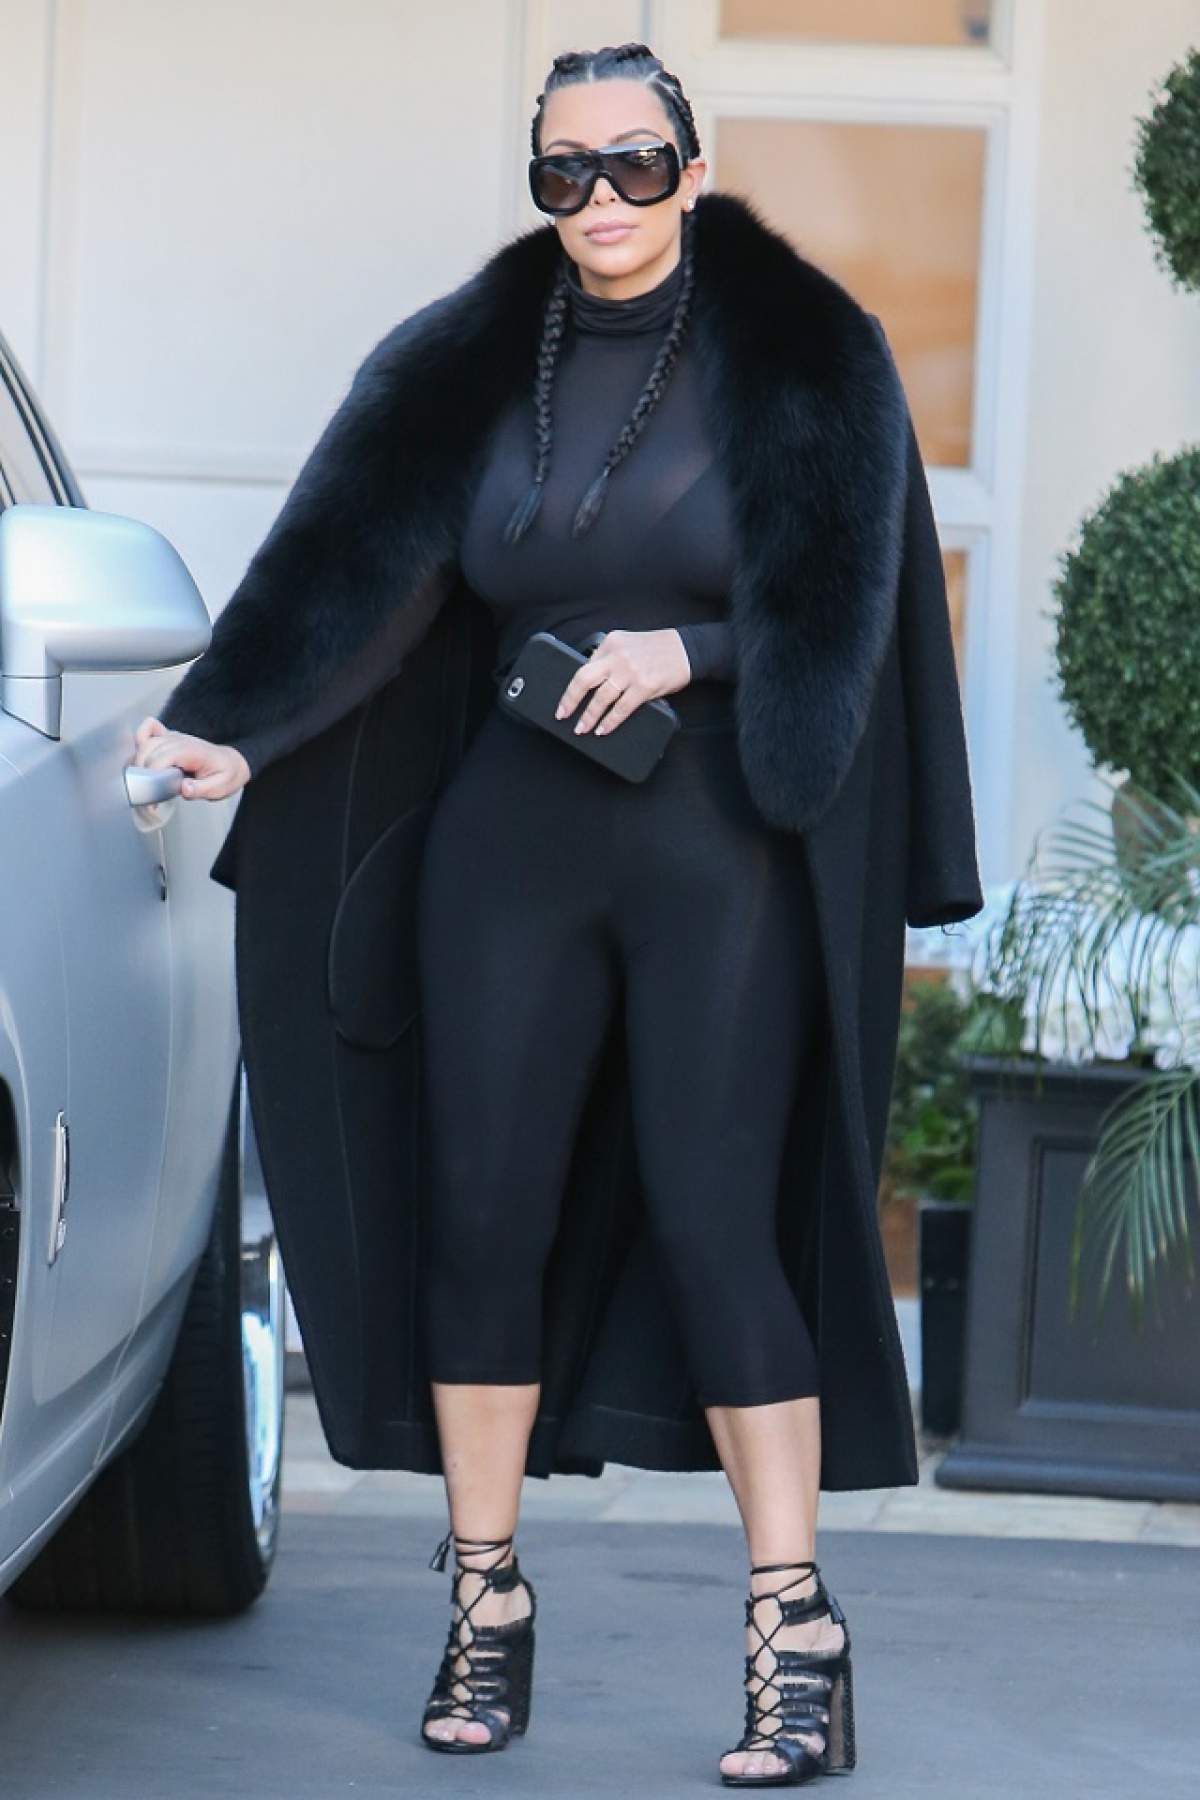 FOTO / Kim Kardashian, apariţie dezastruoasă! A îmbrăcat un top ultra mulat şi transparent, iar fanii au fost oripilaţi